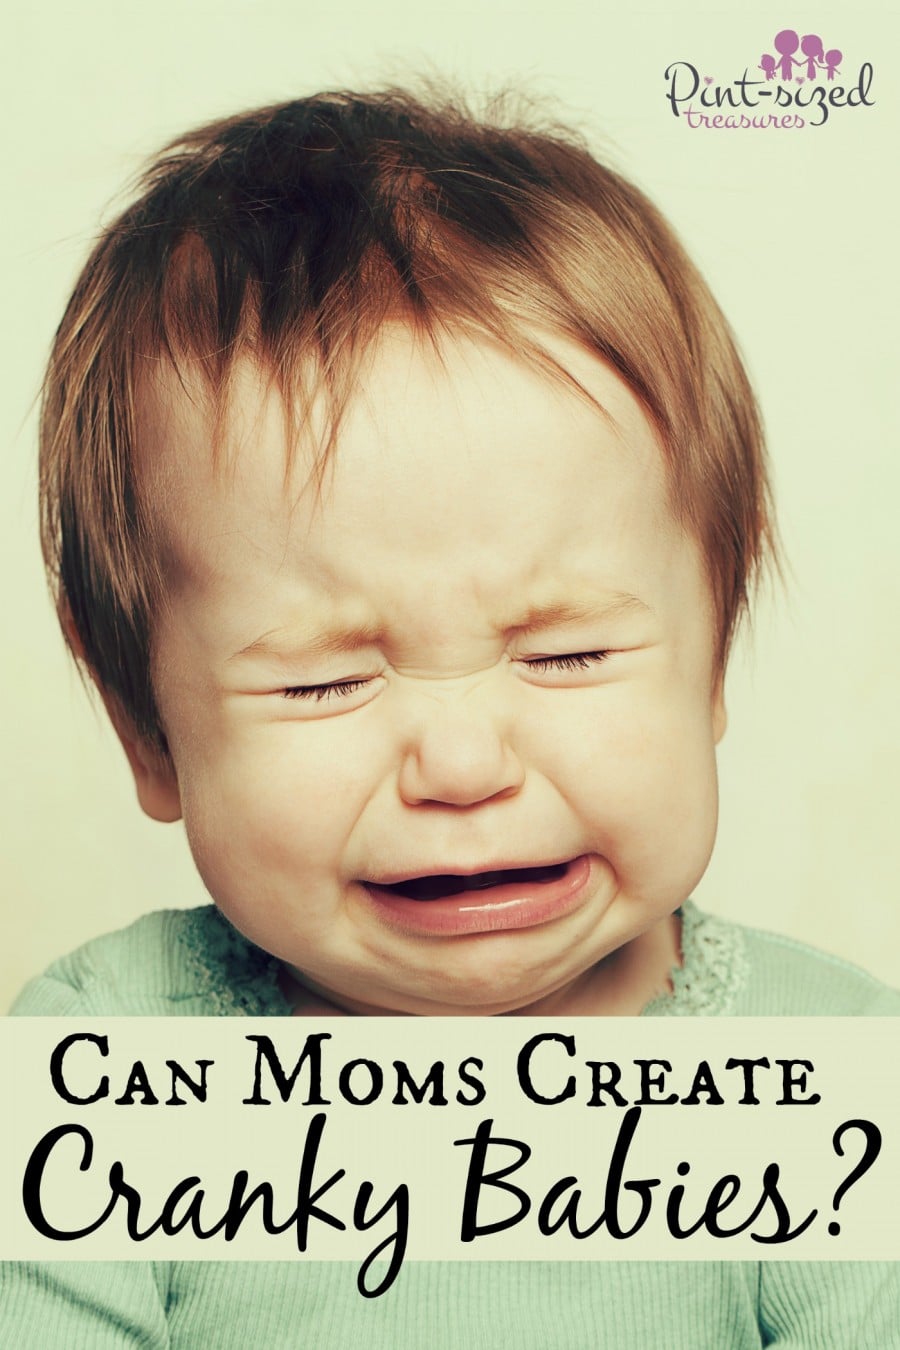 moms creates cranky babies